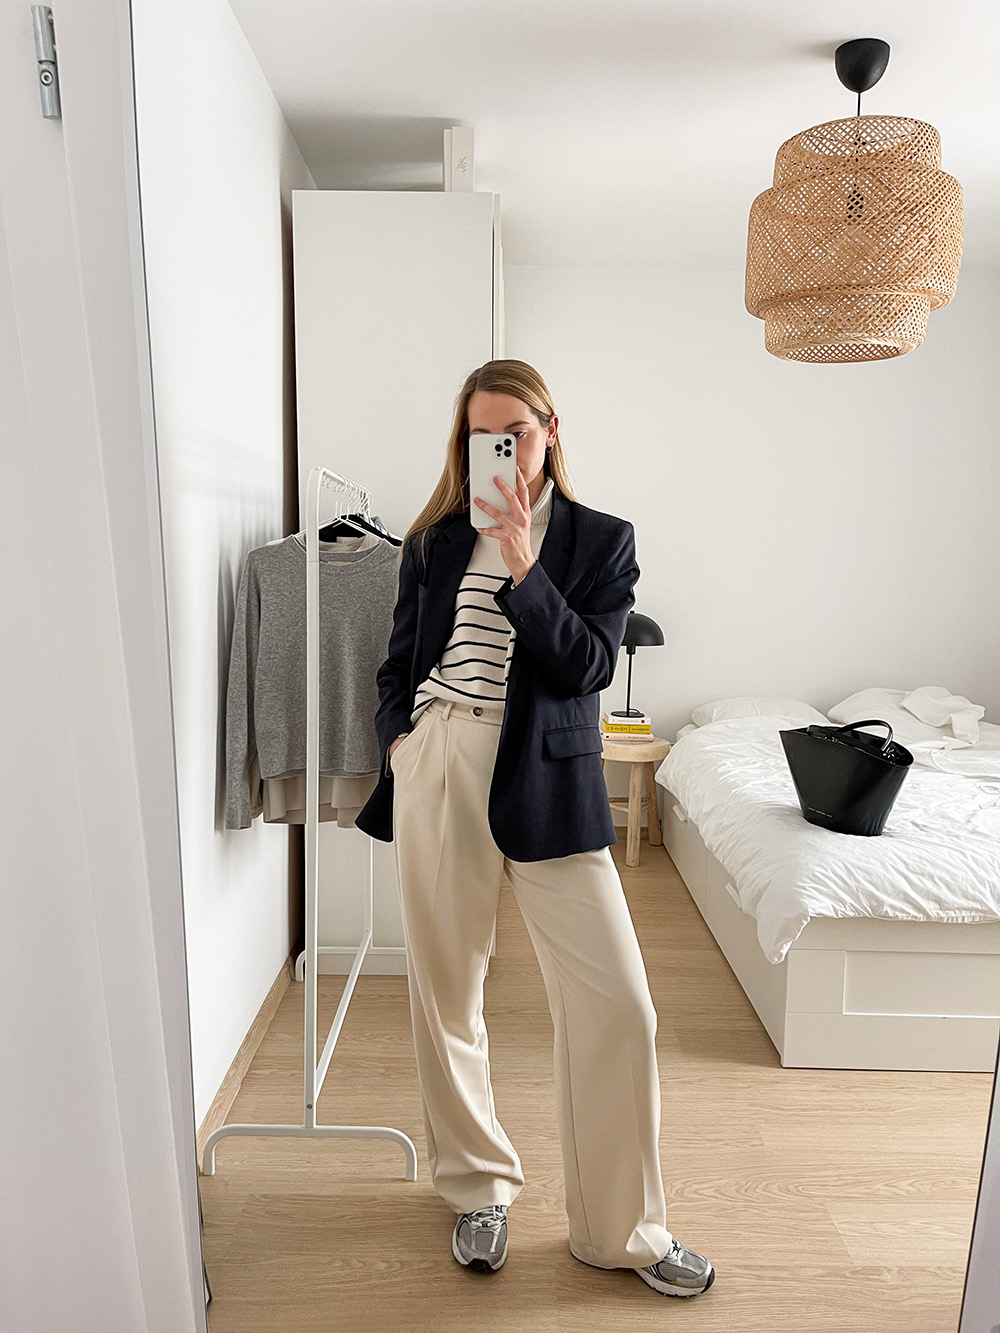 How to look smart? Try woolen suit pants